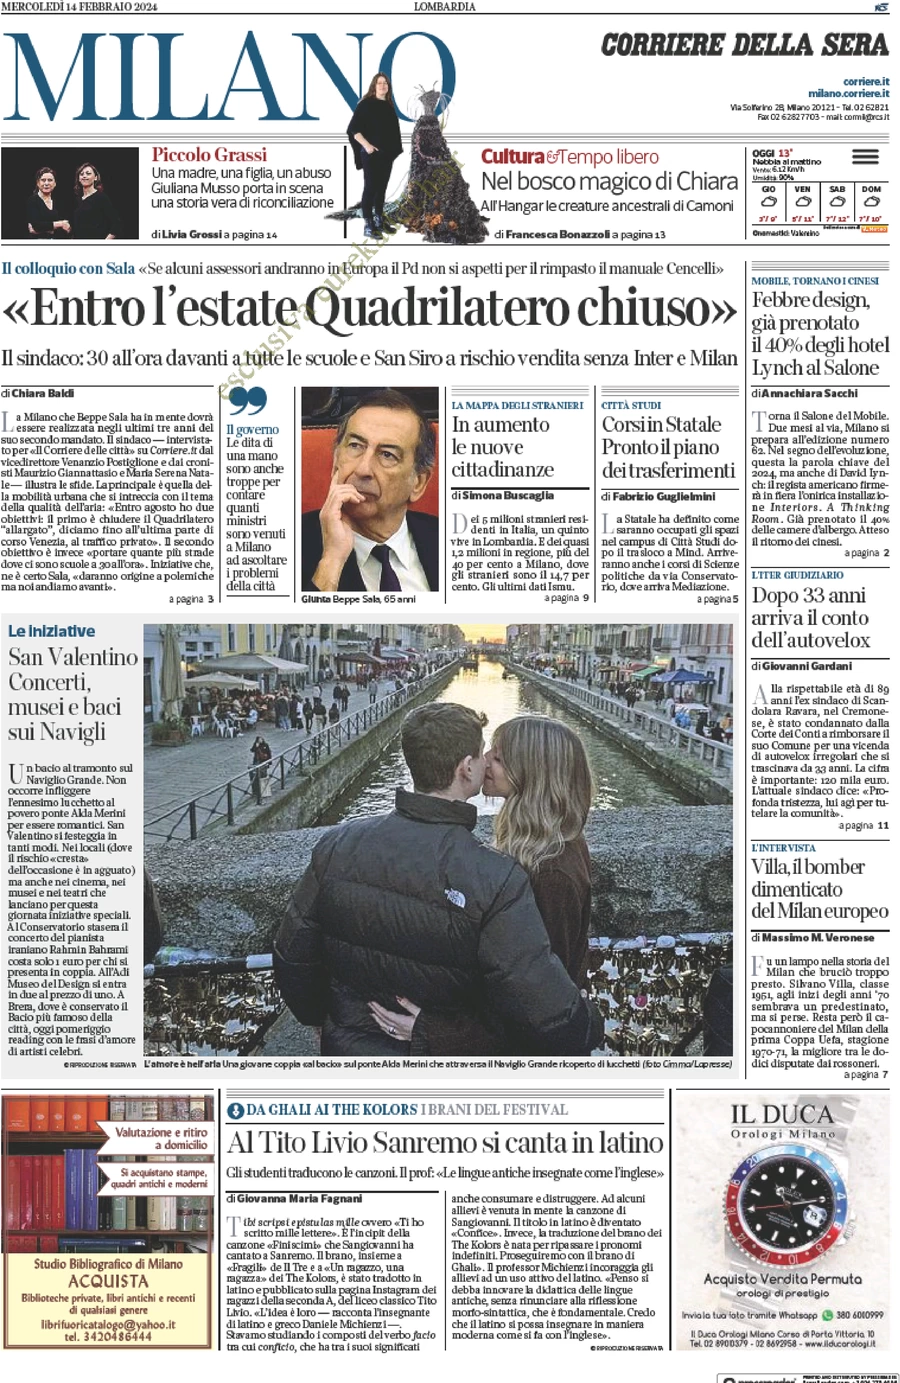 anteprima della prima pagina di corriere-della-sera-milano del 14/02/2024